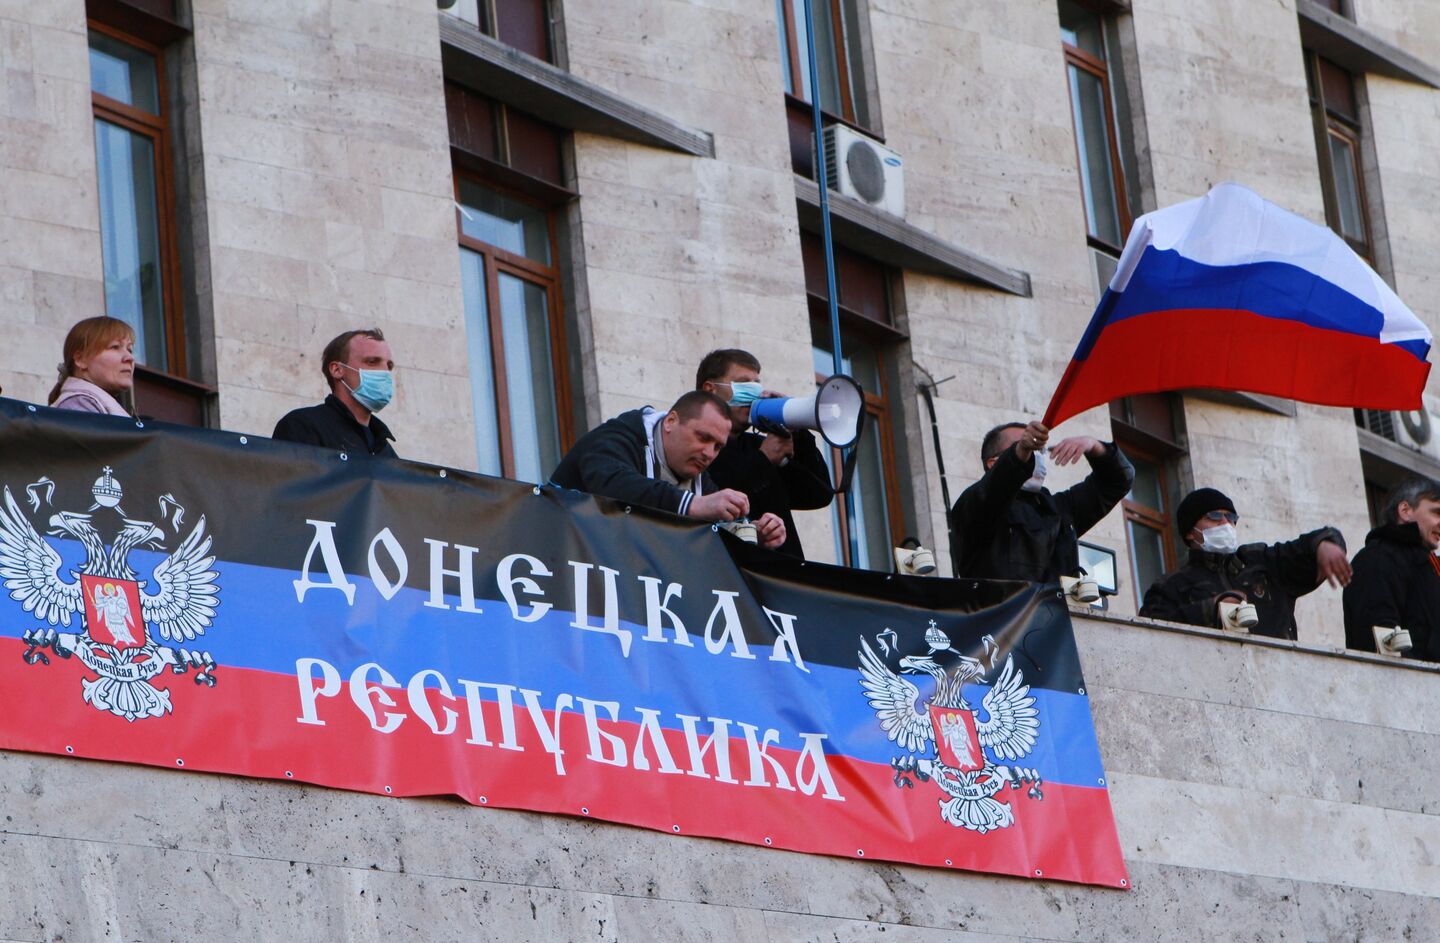 Rassemblement des partisans du référendum sur le statut de la région de Donetsk